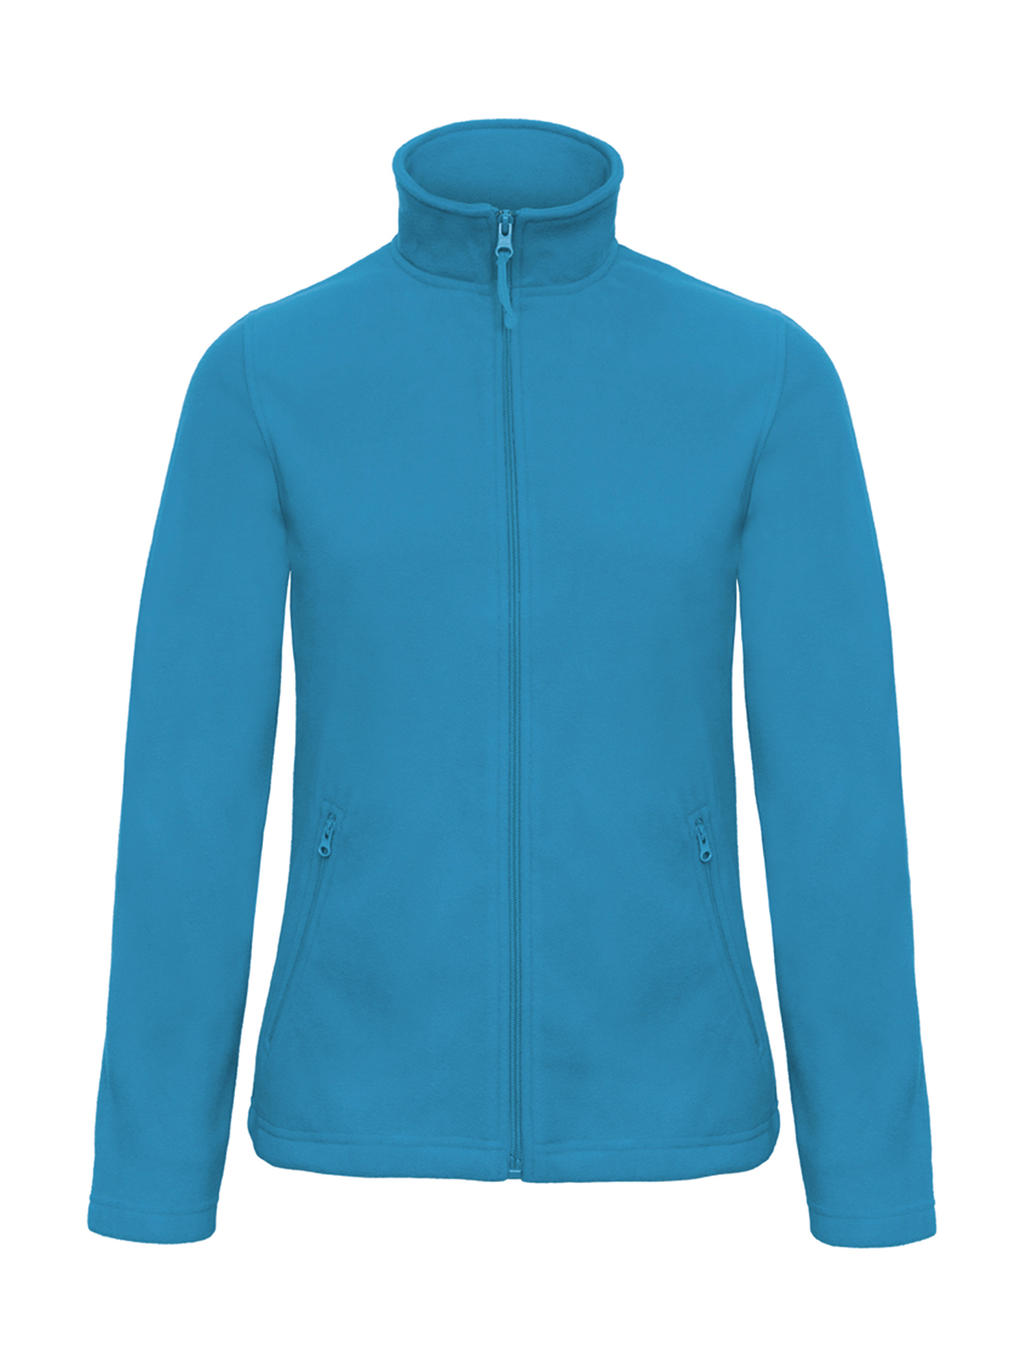 Mikina dámská B&C Micro Fleece - světle modrá, L